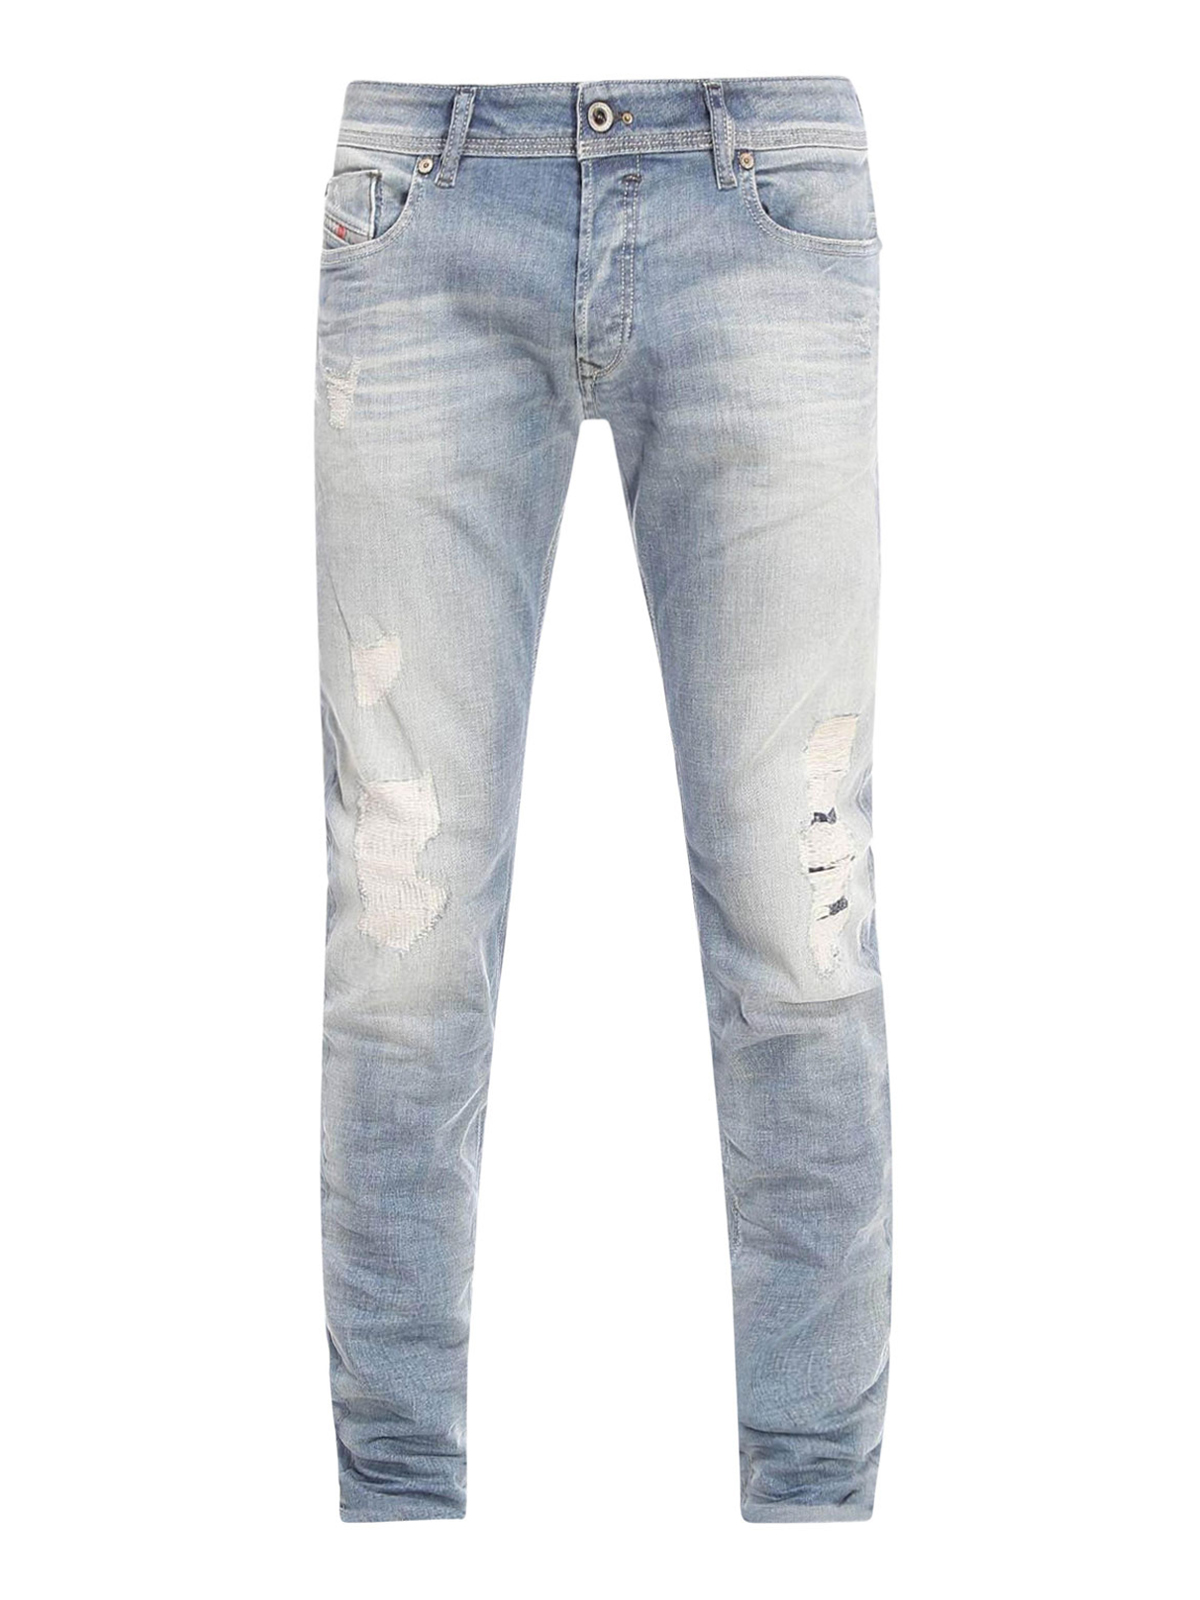 aanwijzing kleding tellen Skinny jeans Diesel - Sleenker slim jeans - 00S7VG672I01 | iKRIX.com